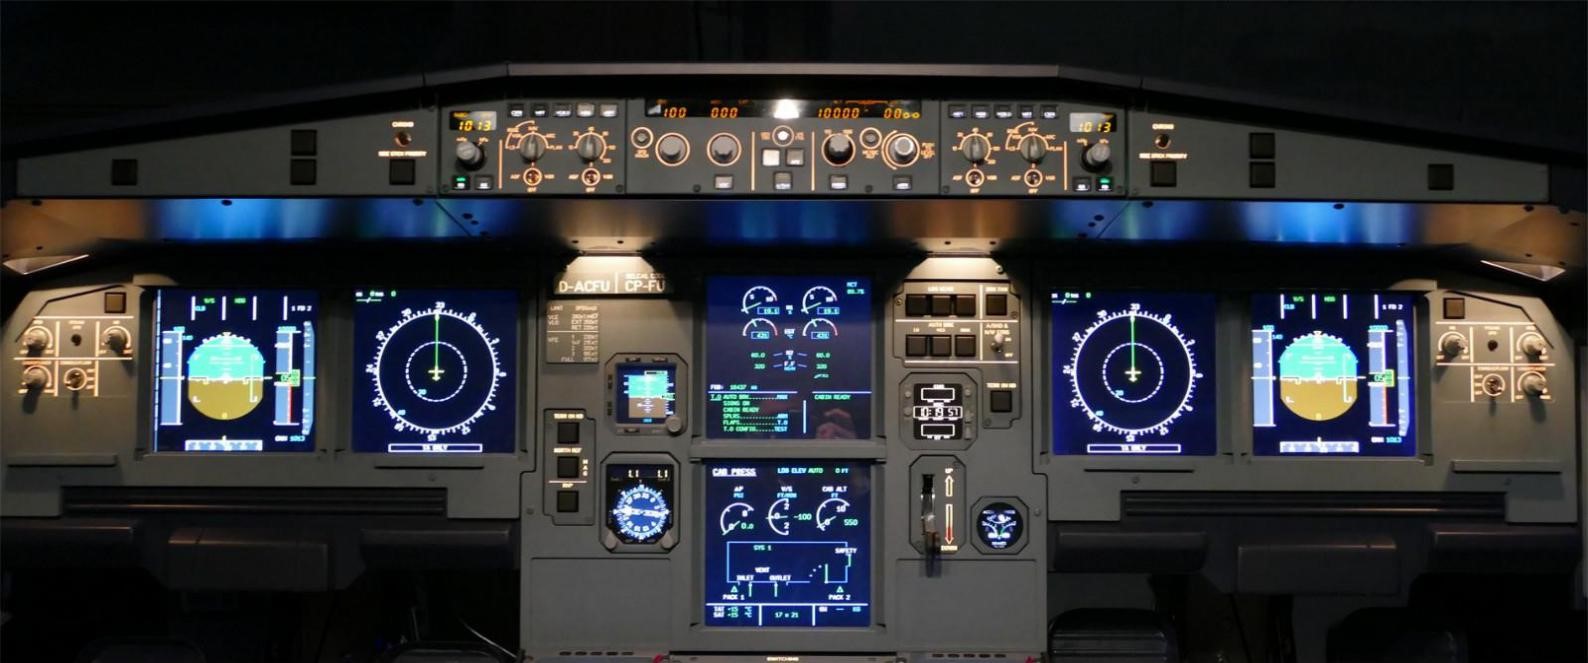 飞行者联盟空客A320模拟舱 整舱产品发布！-7371 